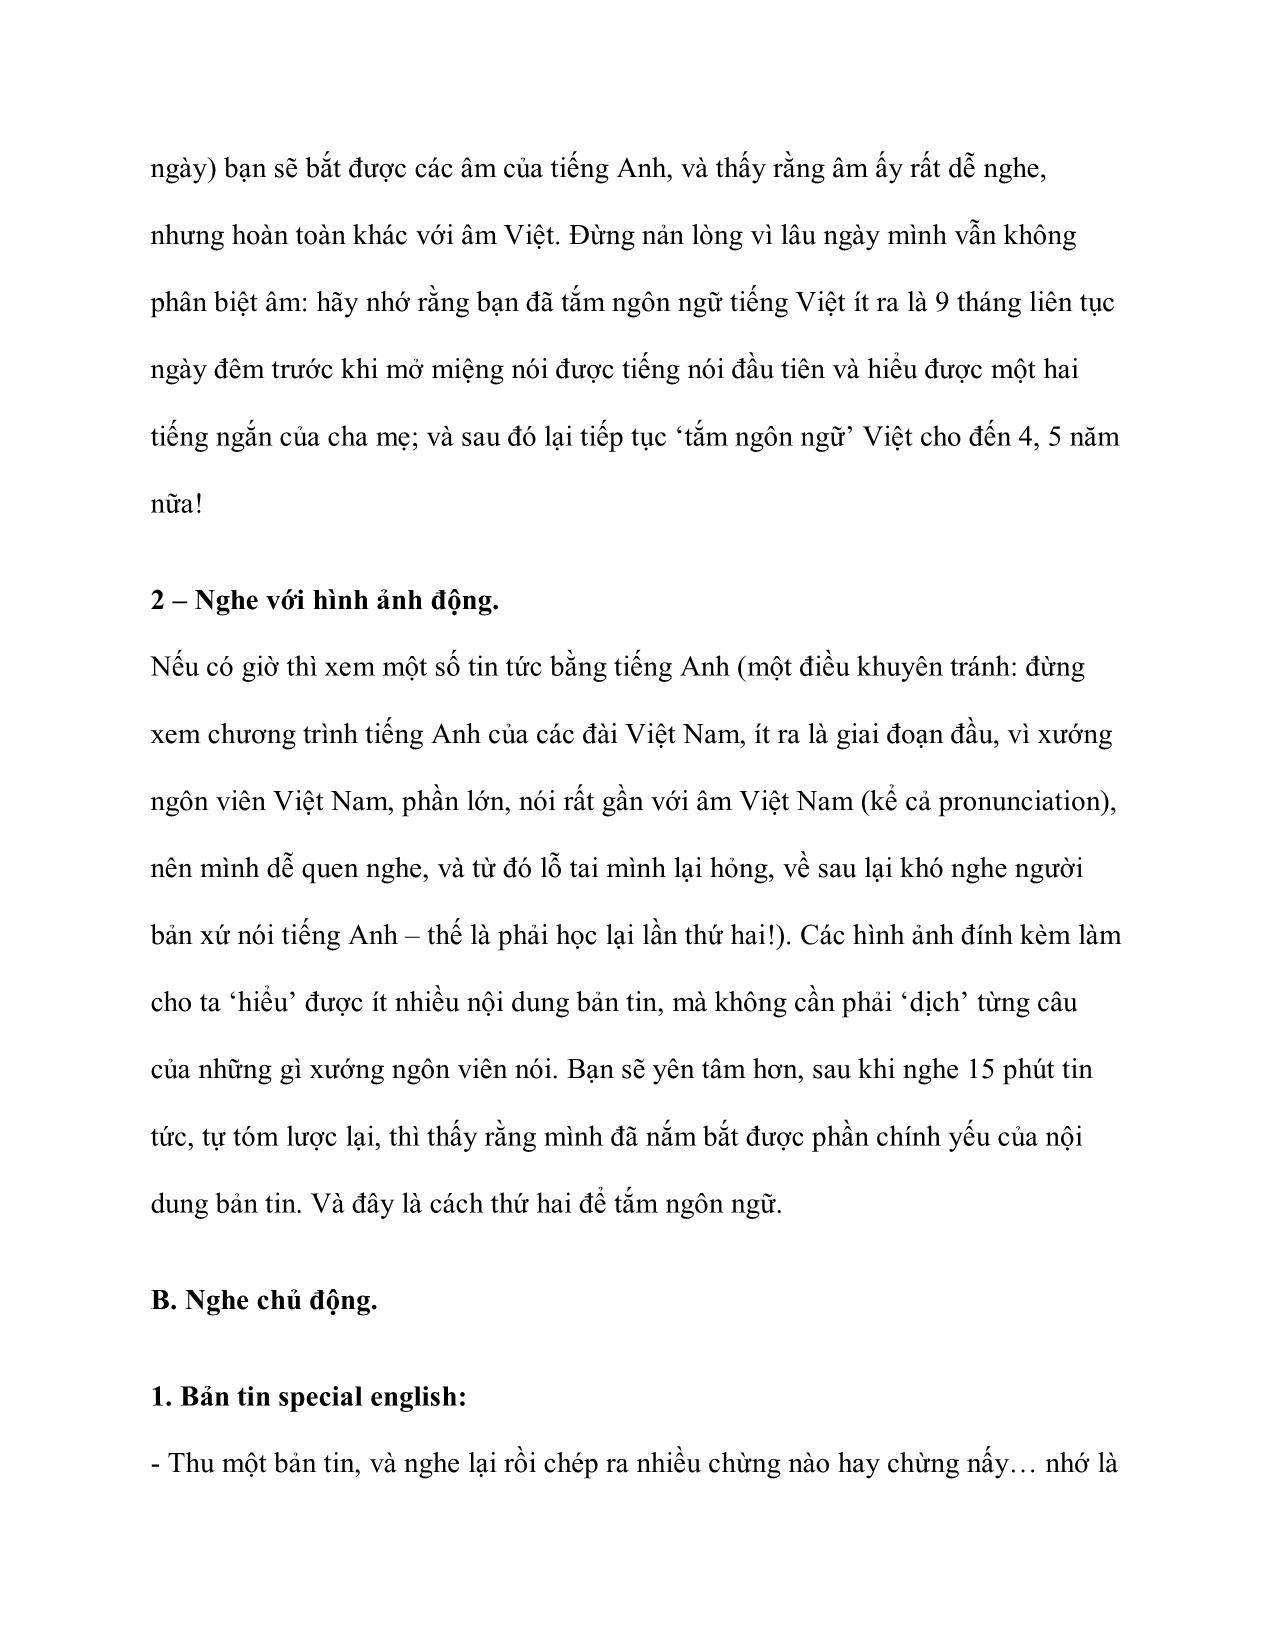 Lam-Sao-nghe-duoc-tieng-anh-part-1._SID12_PID983652 trang 7